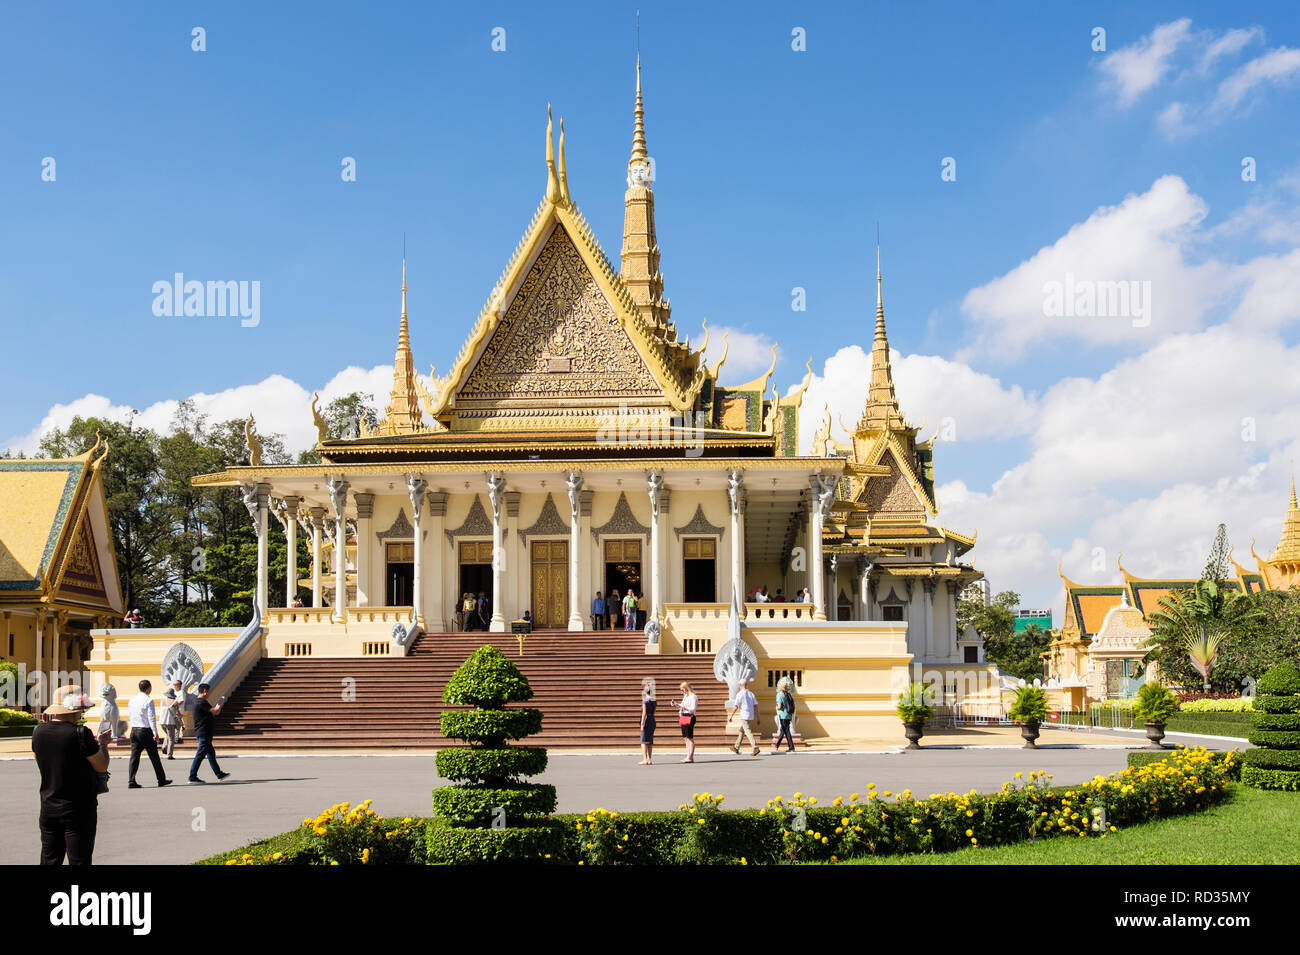 19e siècle Salle du trône dans le Palais Royal complexe avec les touristes visitant les bâtiments. Phnom Penh, Cambodge, Asie Banque D'Images